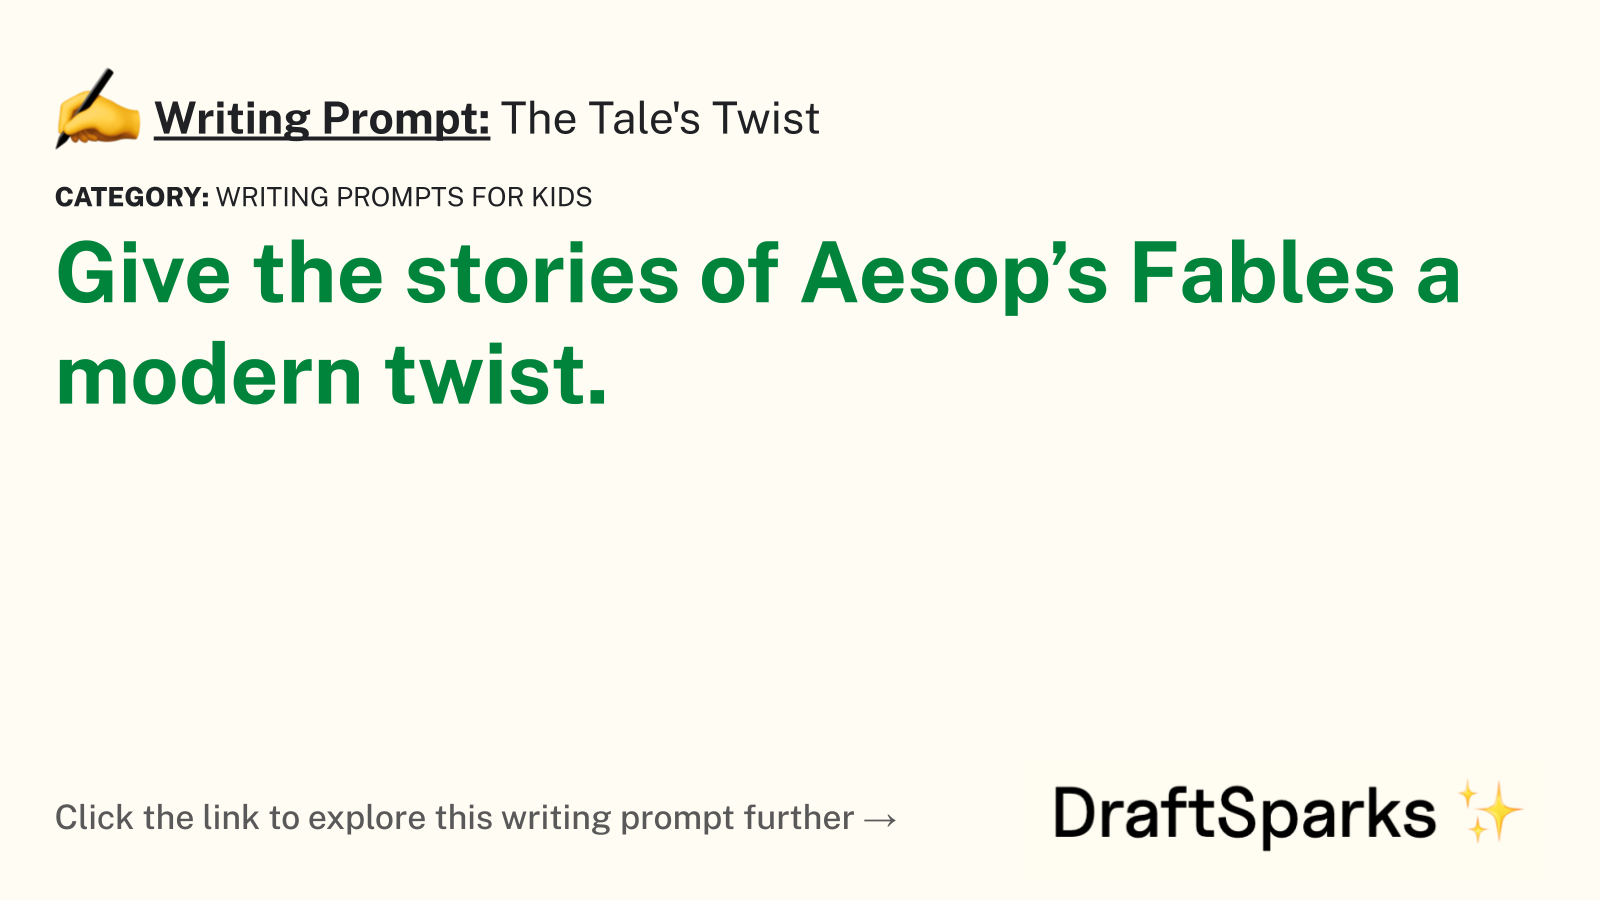 The Tale’s Twist